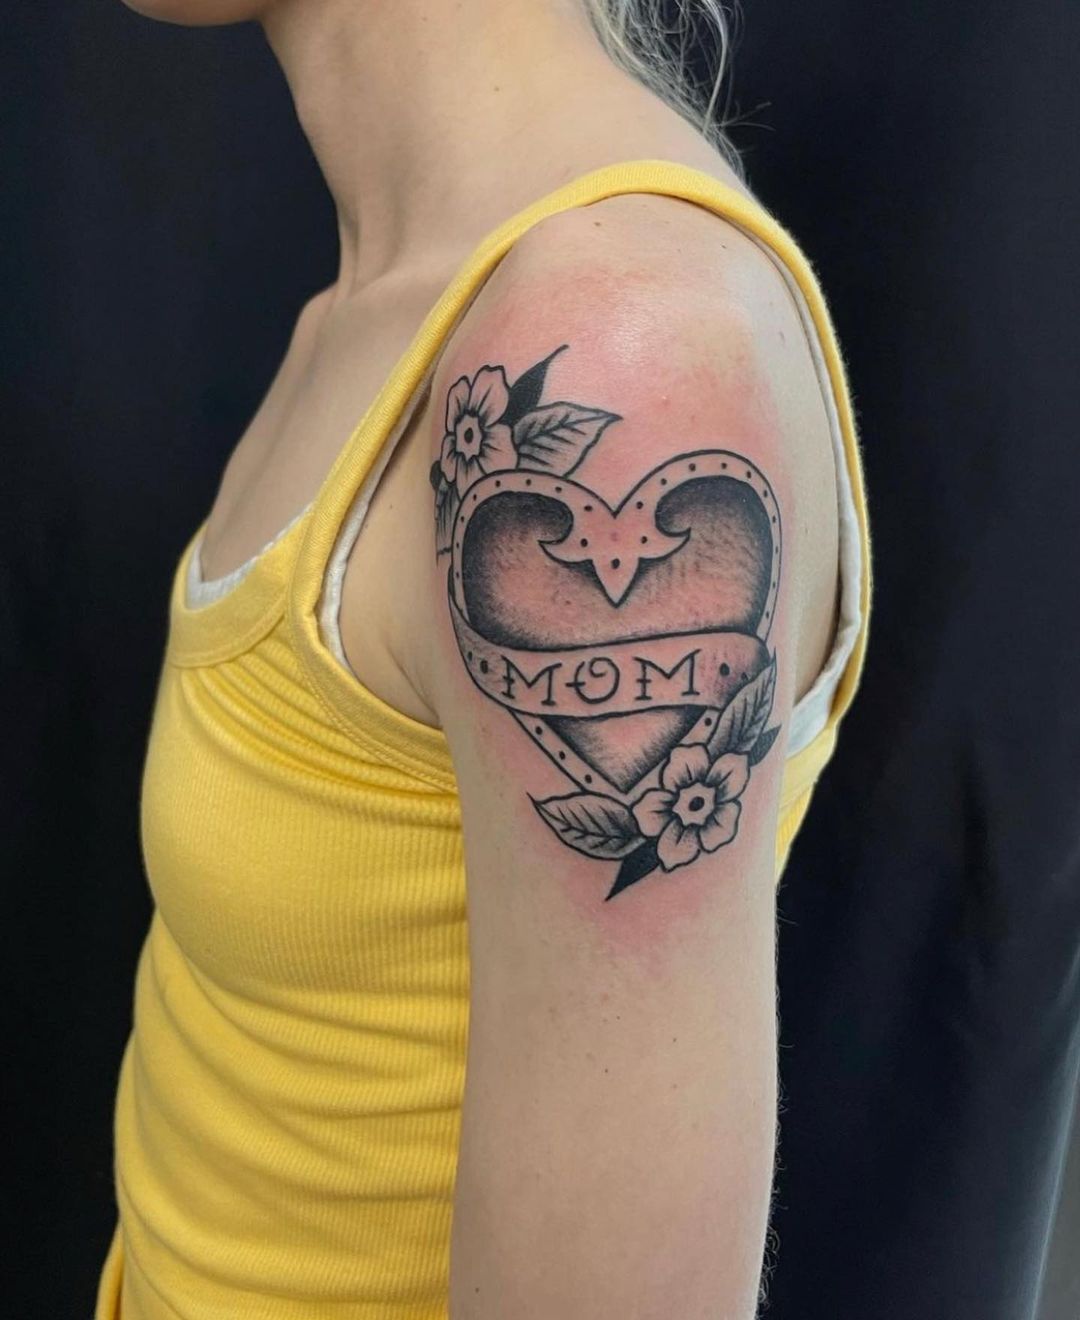 rekartatt - 🤱🏼 mother and her children Z,Zs,Cs,k . . . . #rekartatt # tattoo #tattoos #tattooed #tatt #tattooideas #tattooart #tattoodesign  #tattoostyle #tattoosofinstagram #ink #mother #motherhood #children #child  #dotworktattoo #budapest #hungary ...